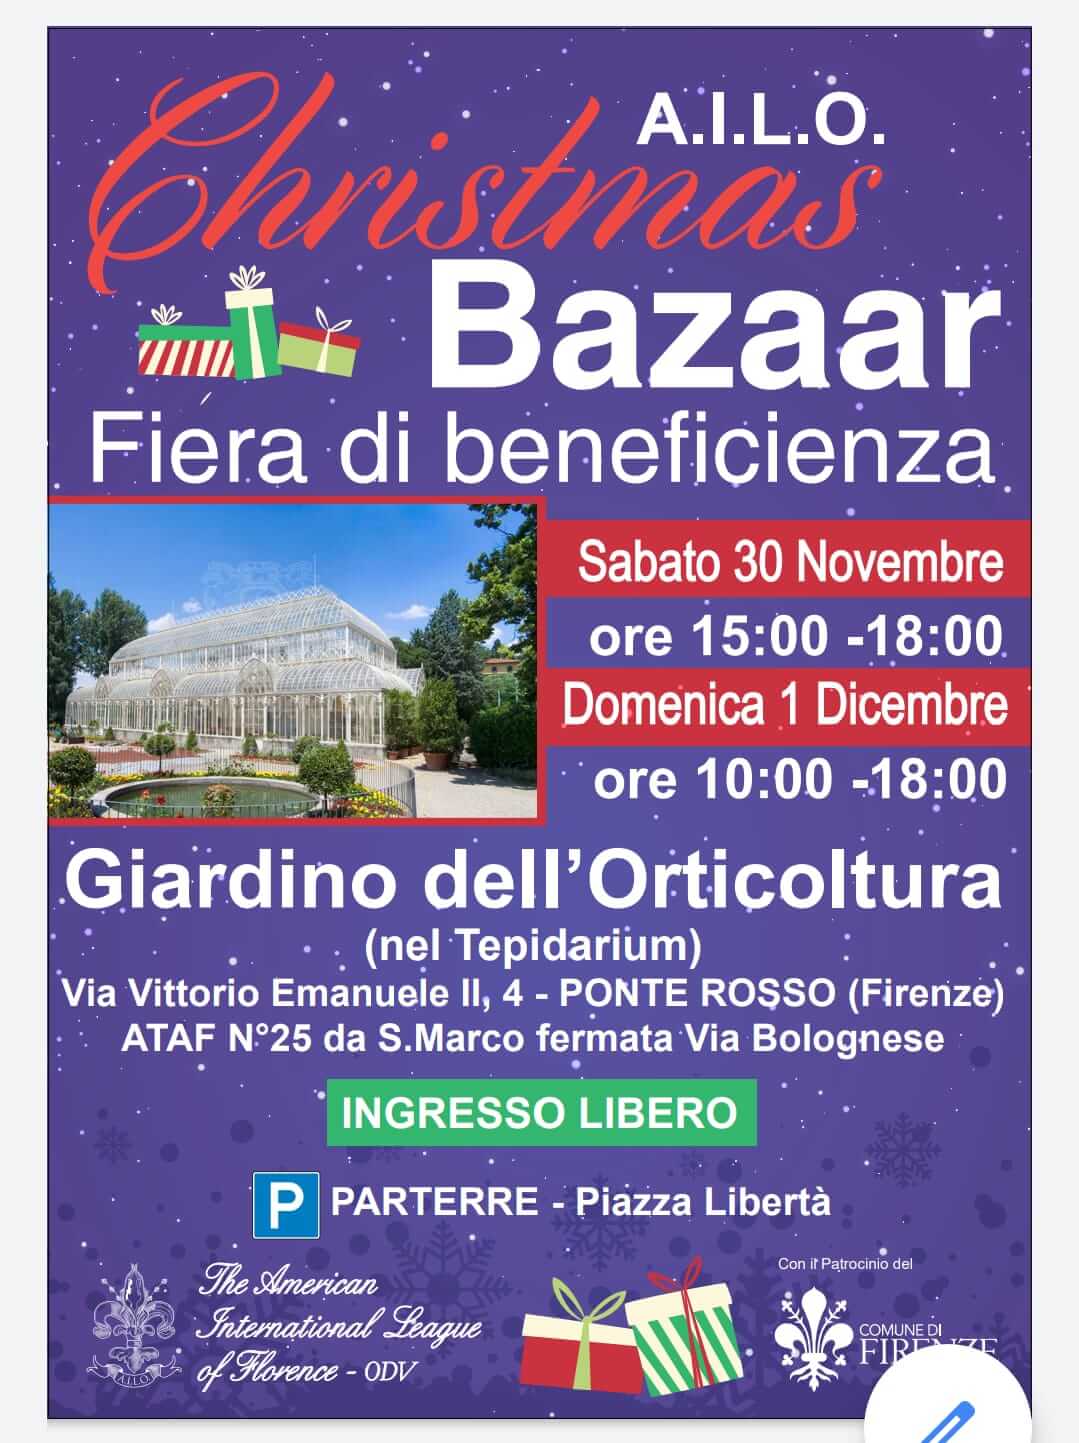 Firenze: 44° edizione di Christmas Bazaar il mercato di beneficenza organizzato da AILO